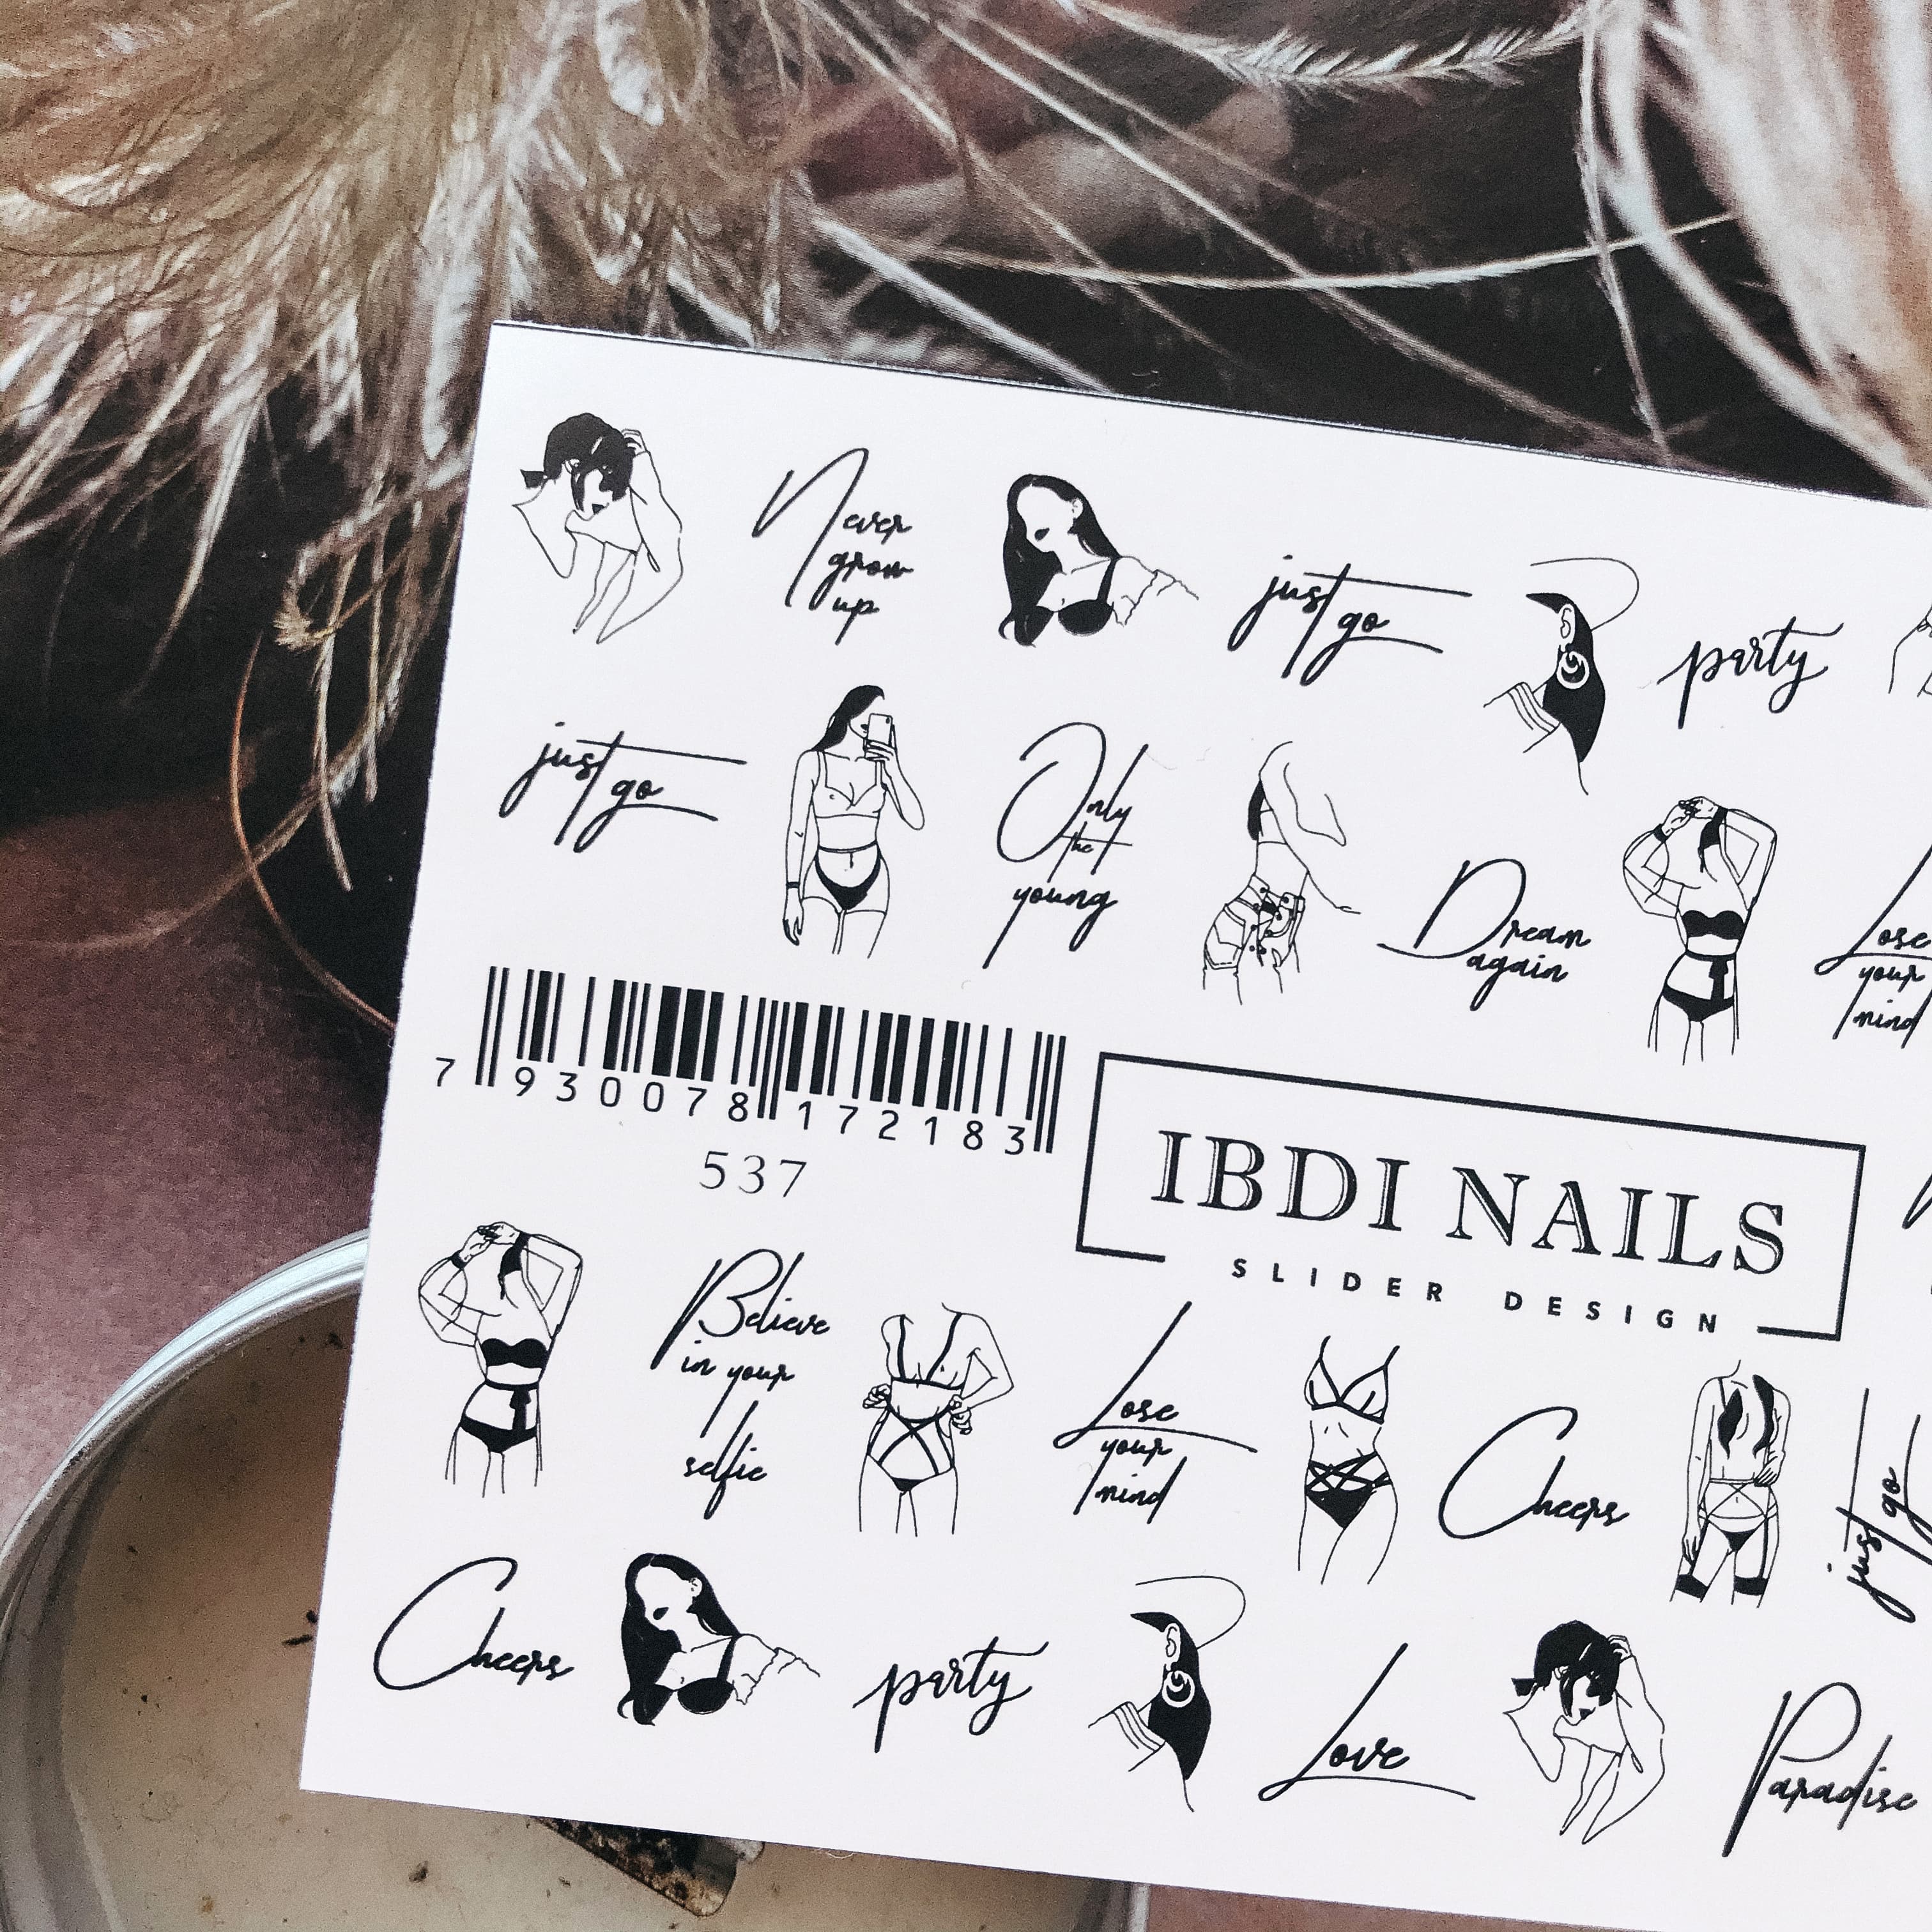 Слайдер дизайн Ibdi-Nails 537